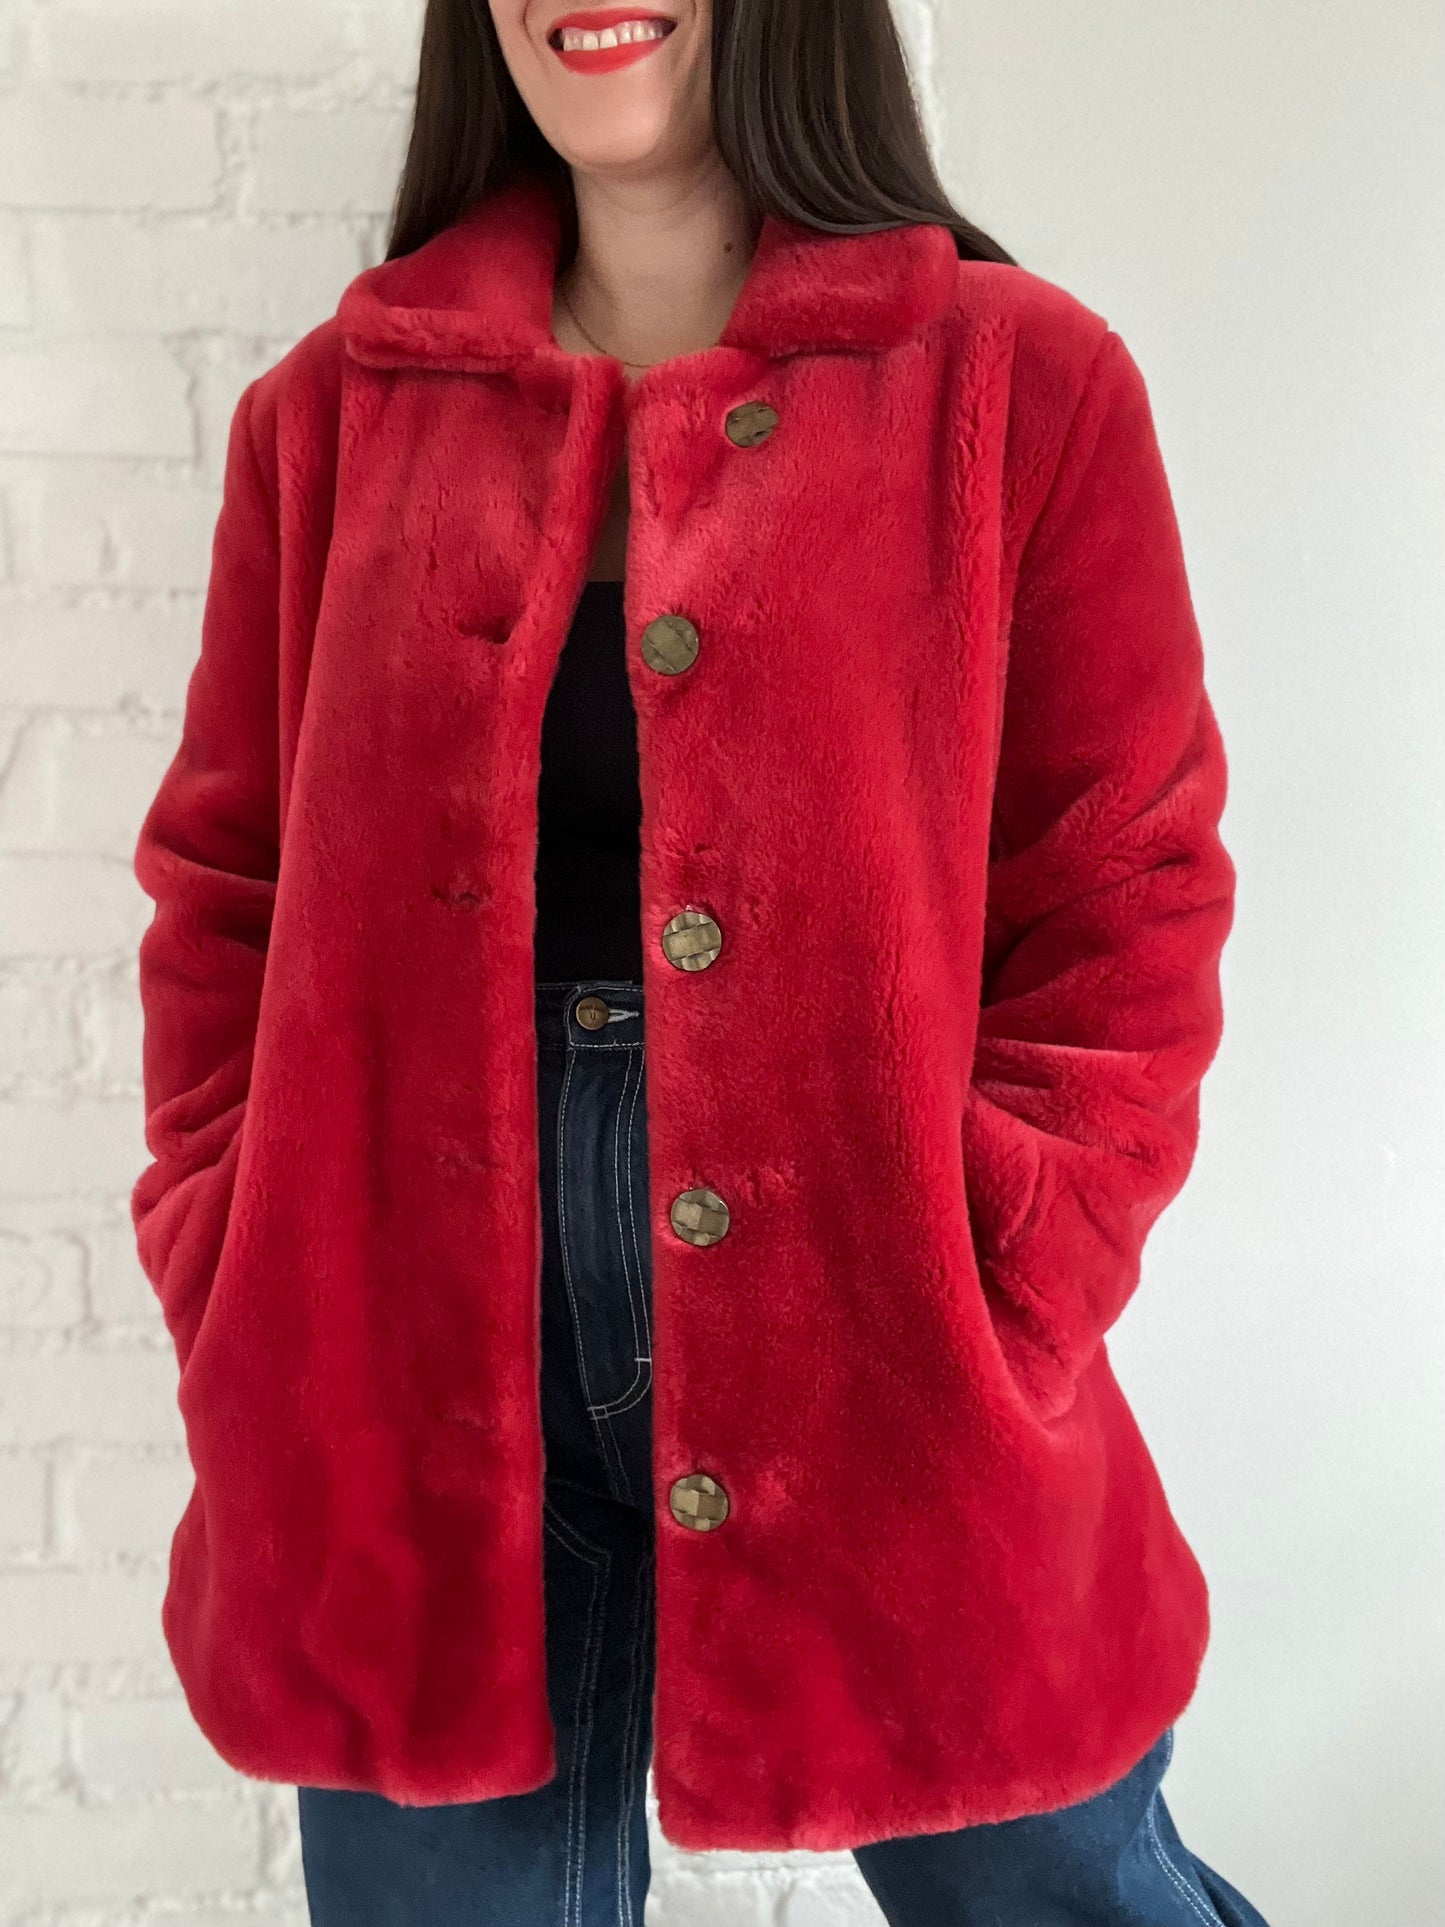 Faux Fur Cherry Red Jacket - M/L